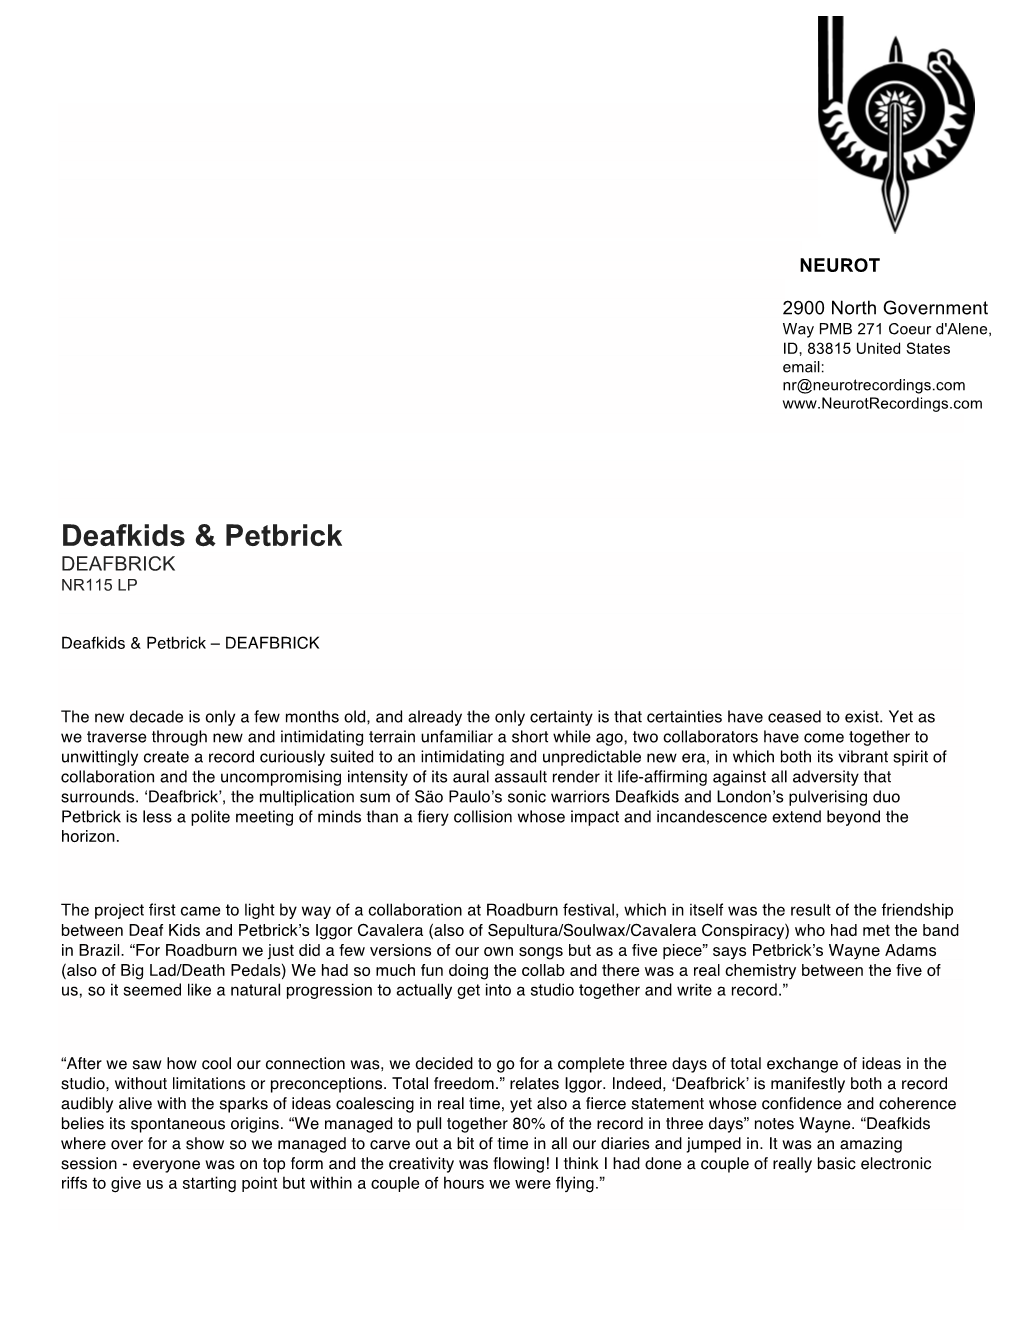 Deafkids & Petbrick